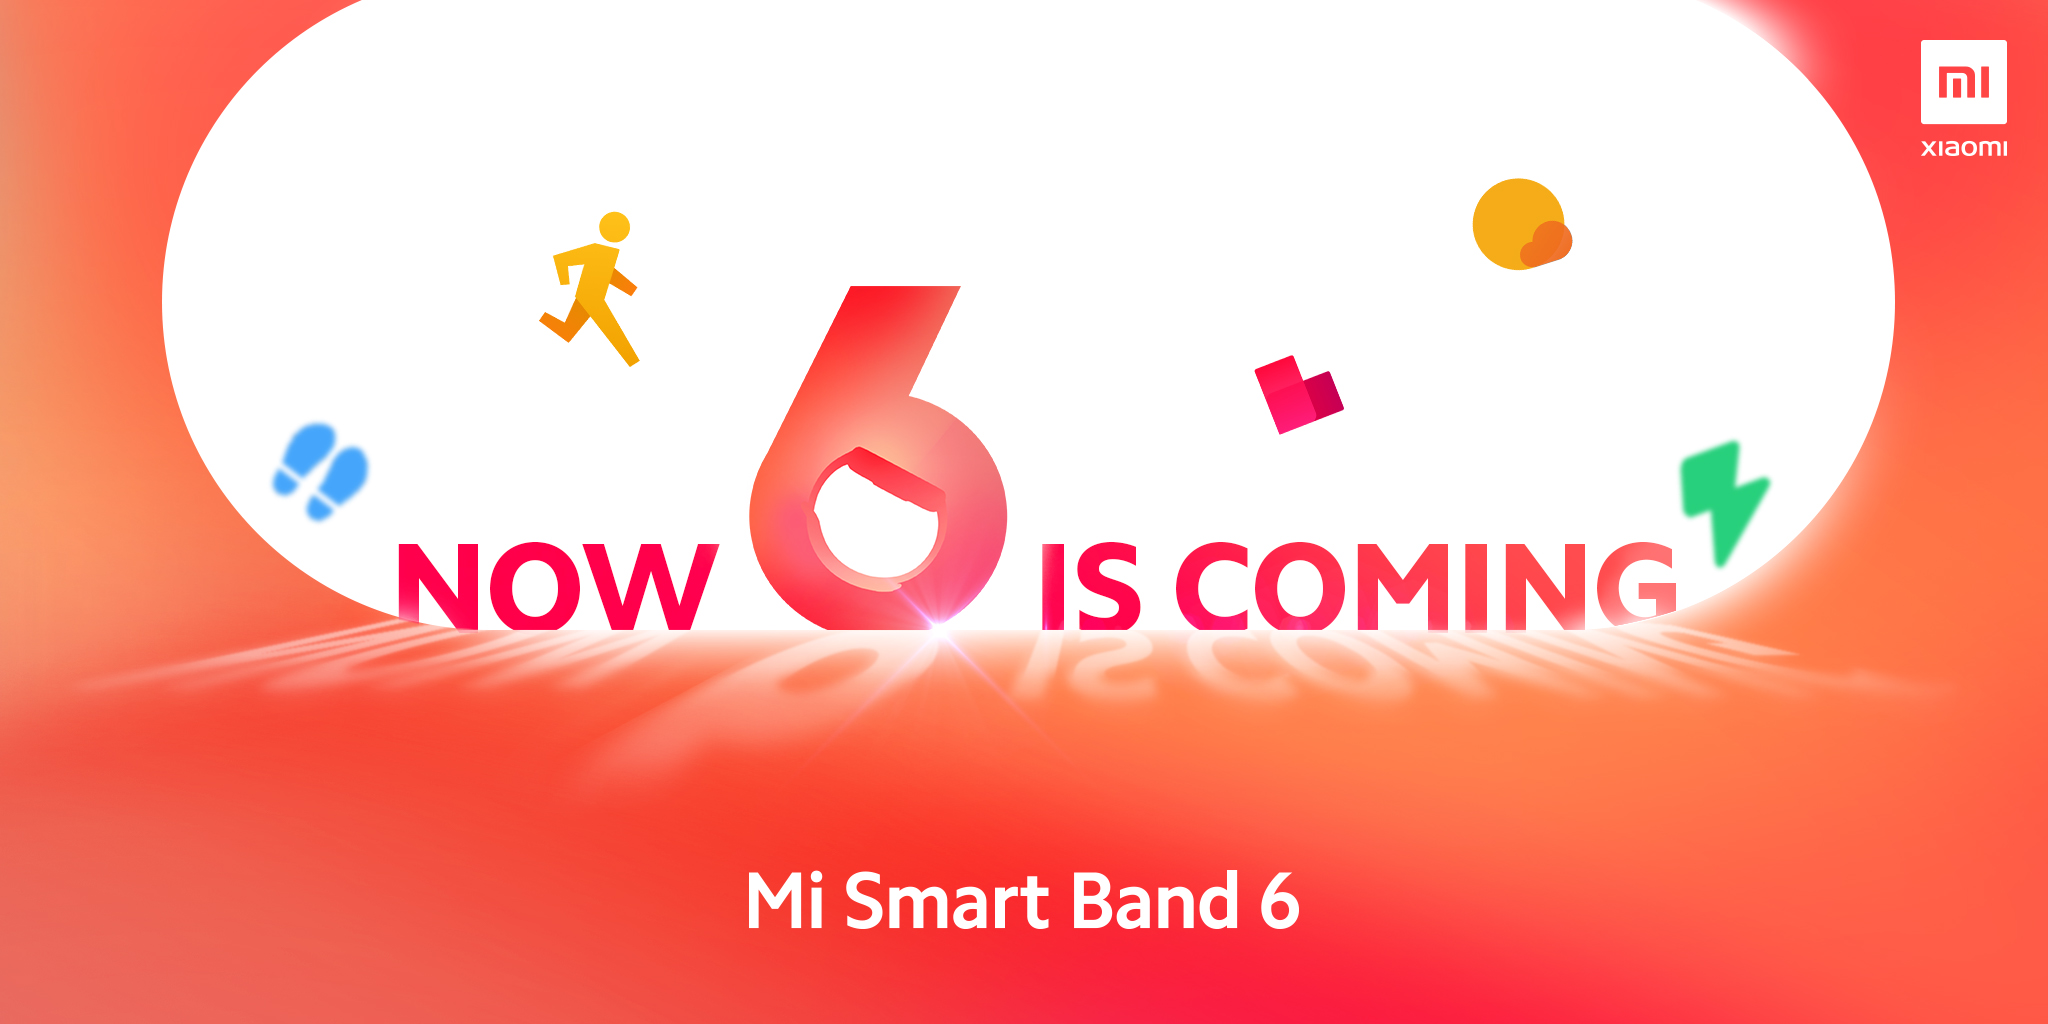 Vòng đeo tay Xiaomi Mi Band 6 sẽ được ra mắt vào 29/3